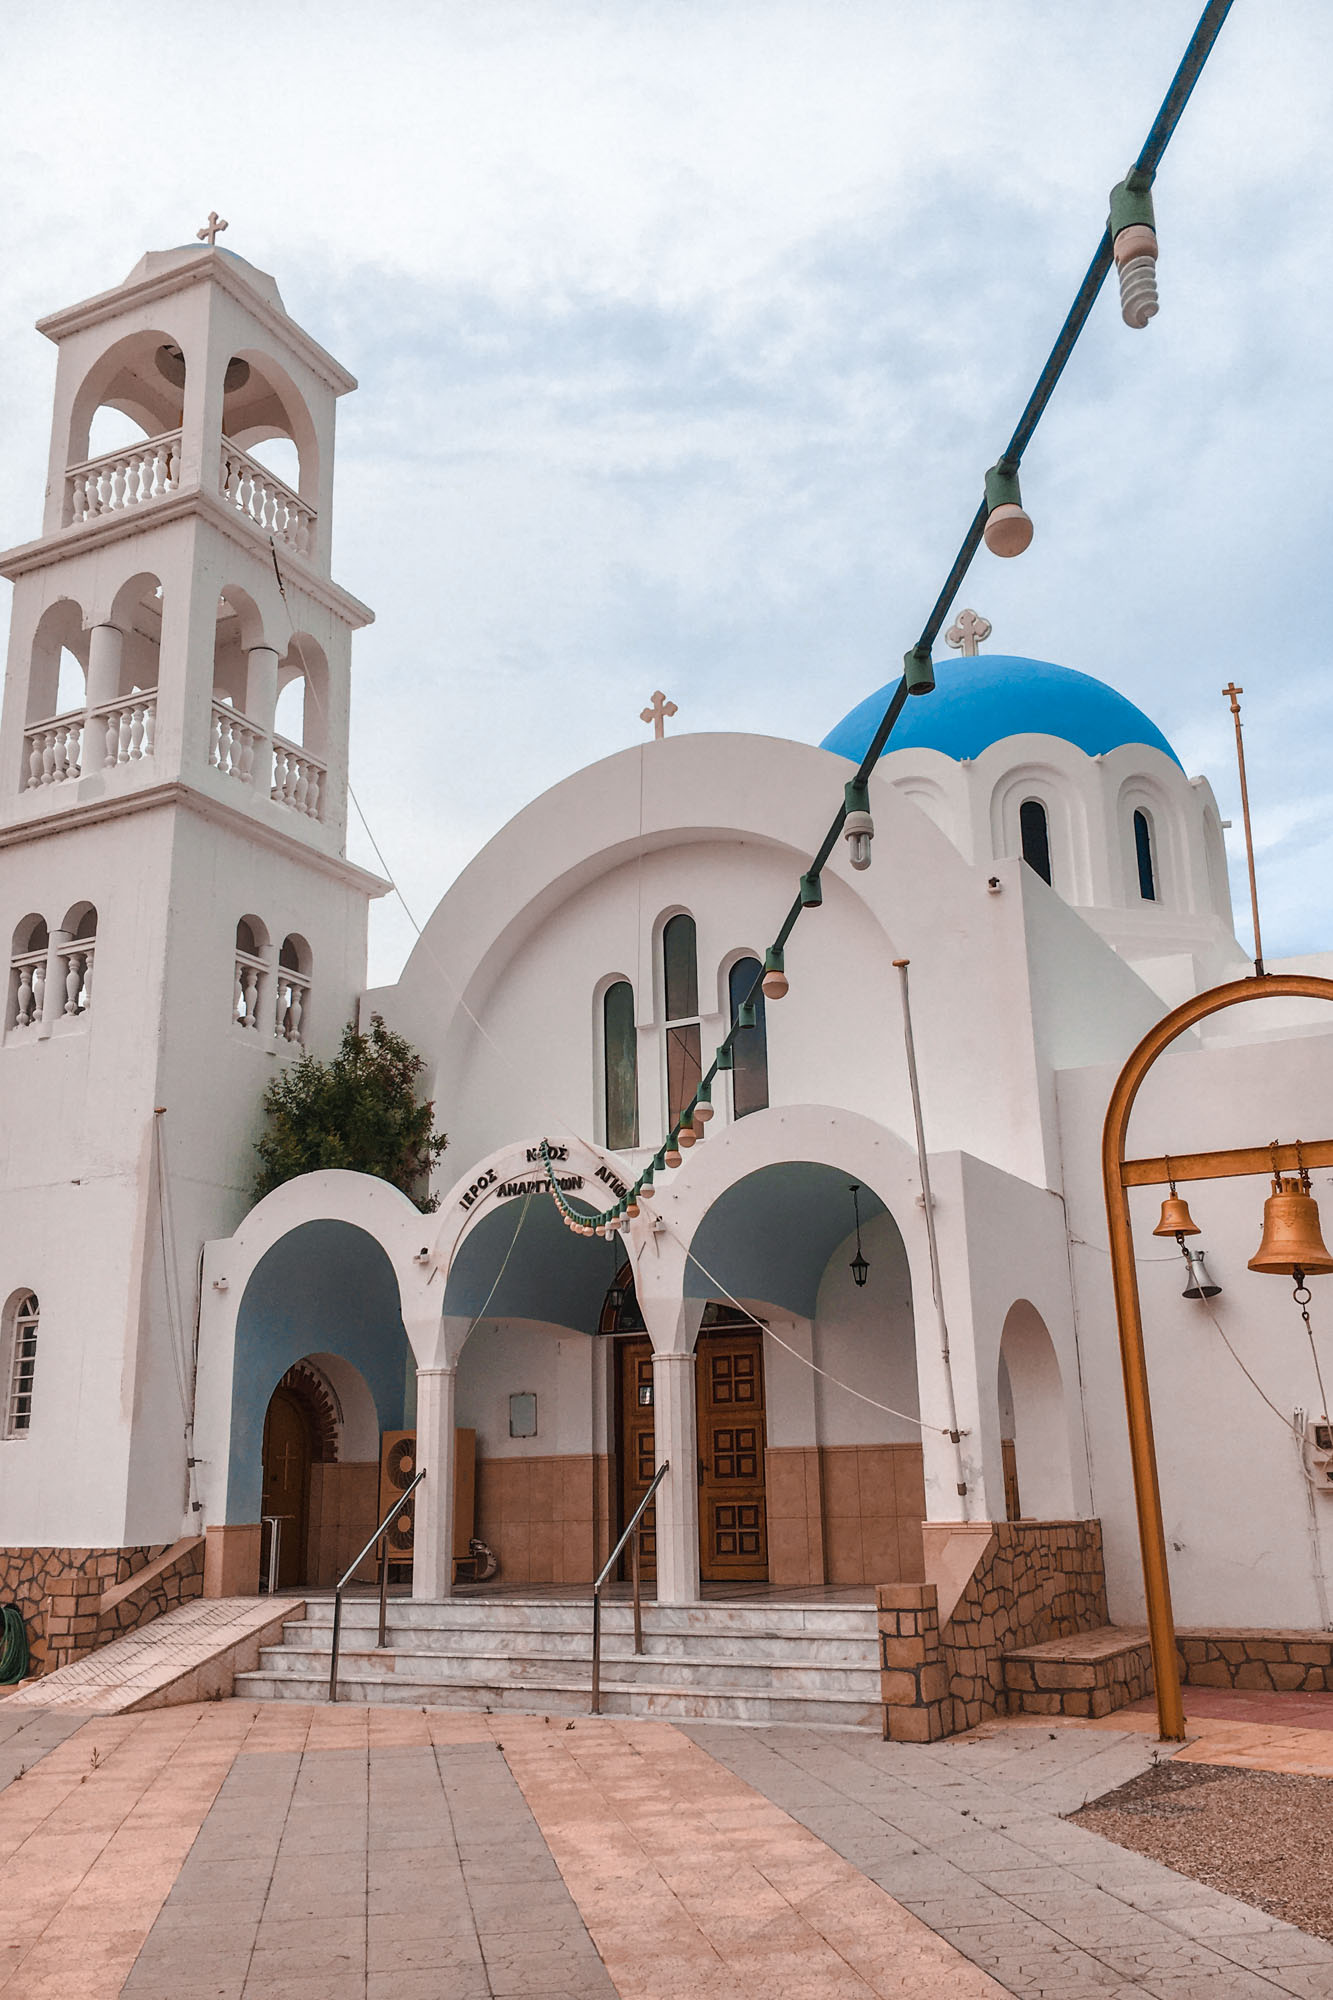 biało-niebieski kościółek na wyspie agristi